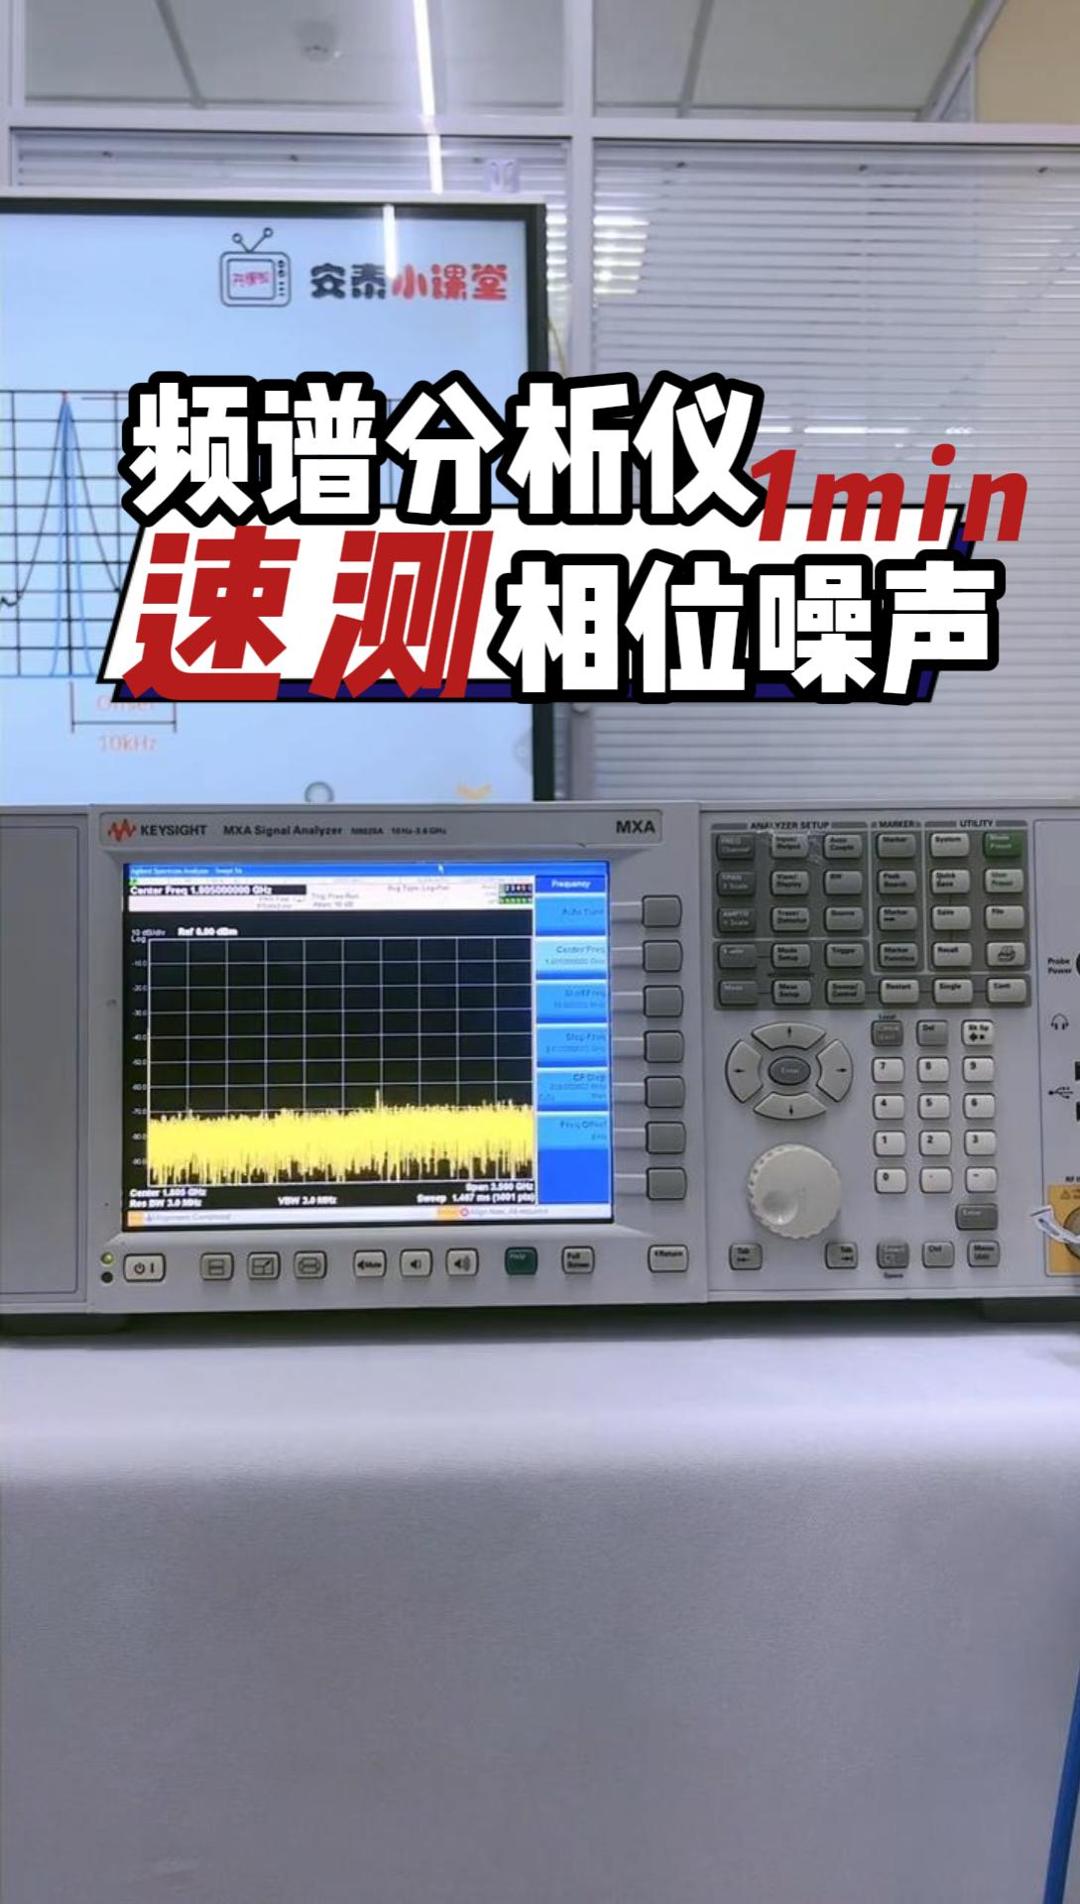 1分钟速测|进口频谱分析仪测试相位噪声#频谱分析仪 #频谱仪 #电子工程师 #相位噪声 #RBW #VBW 